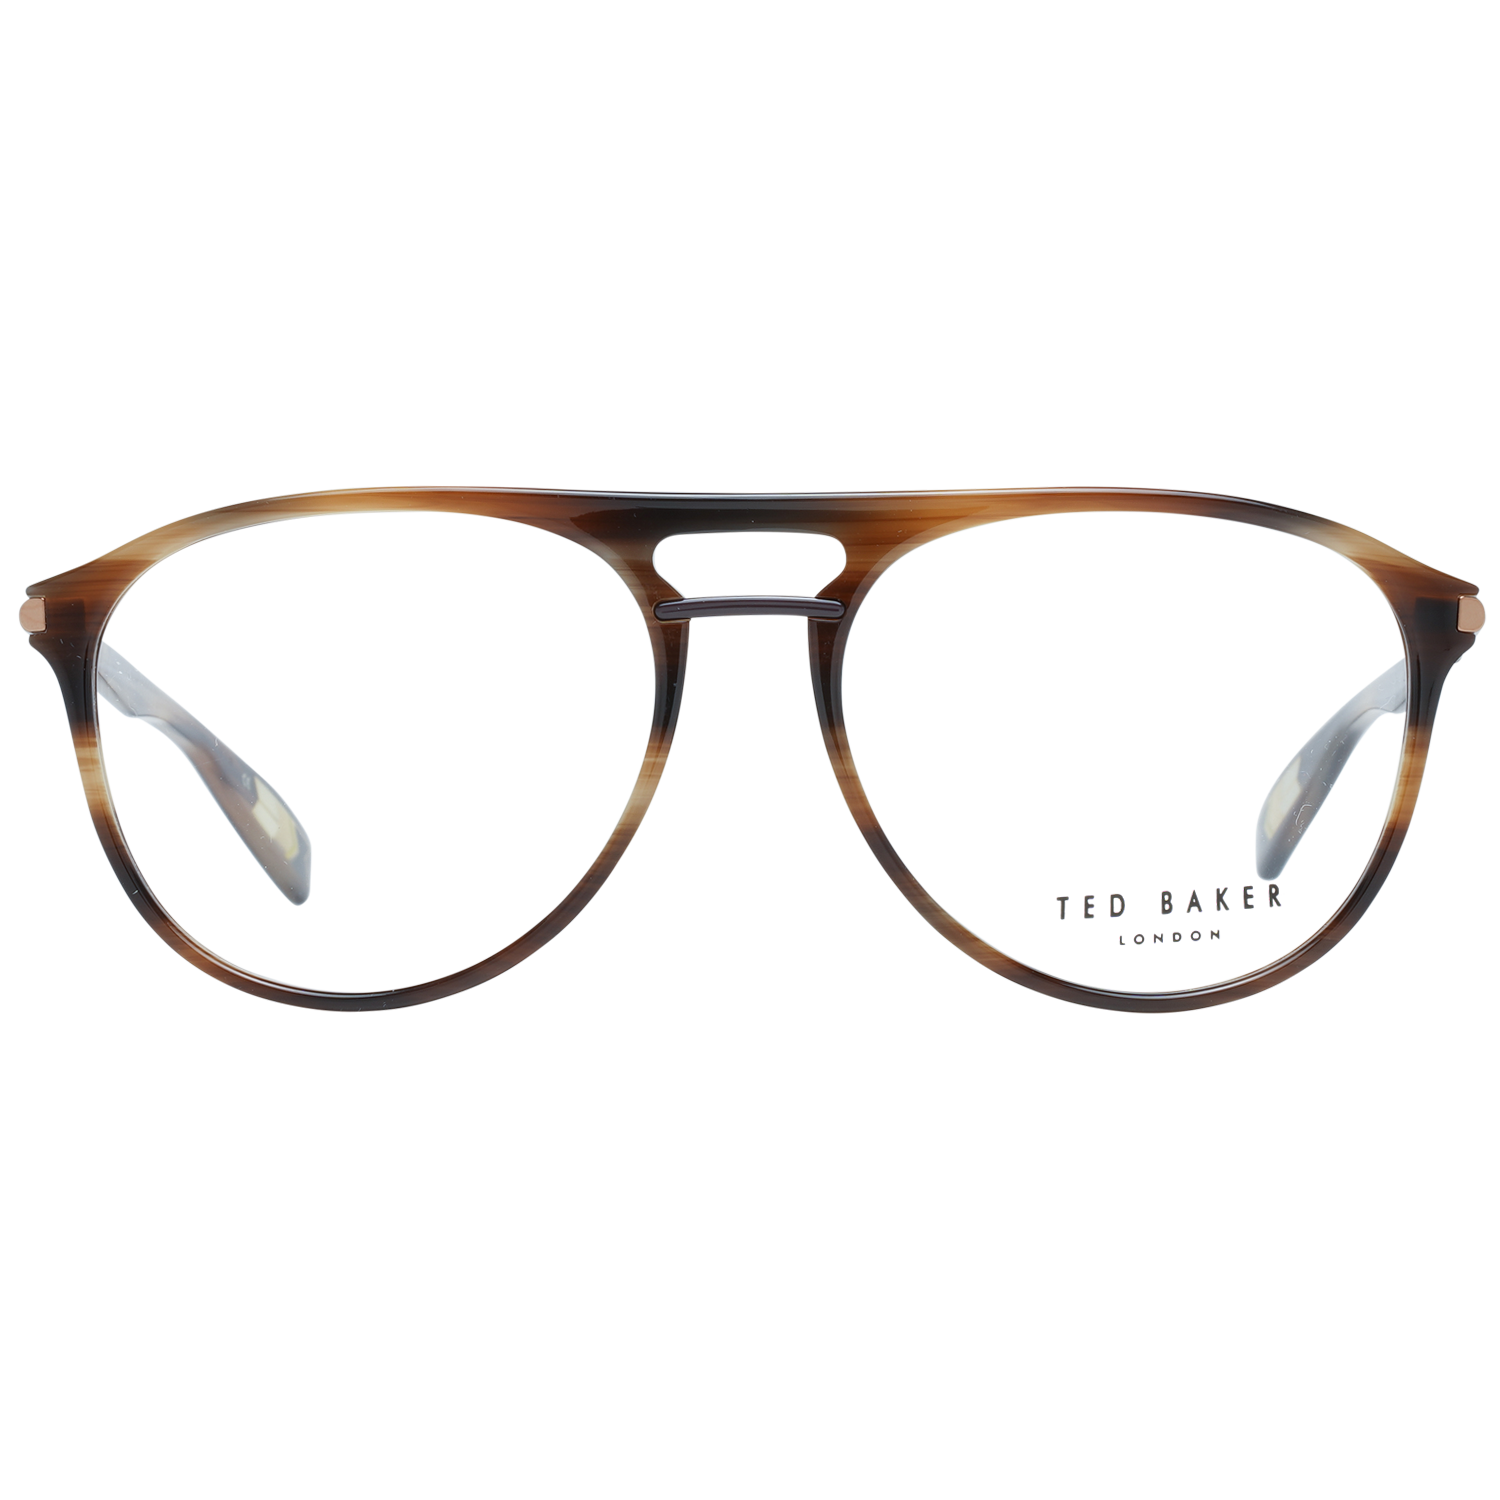 Ted Baker Frames Ted Baker Optical Frame TB8192 155 56 Keller Eyeglasses Eyewear UK USA Australia 